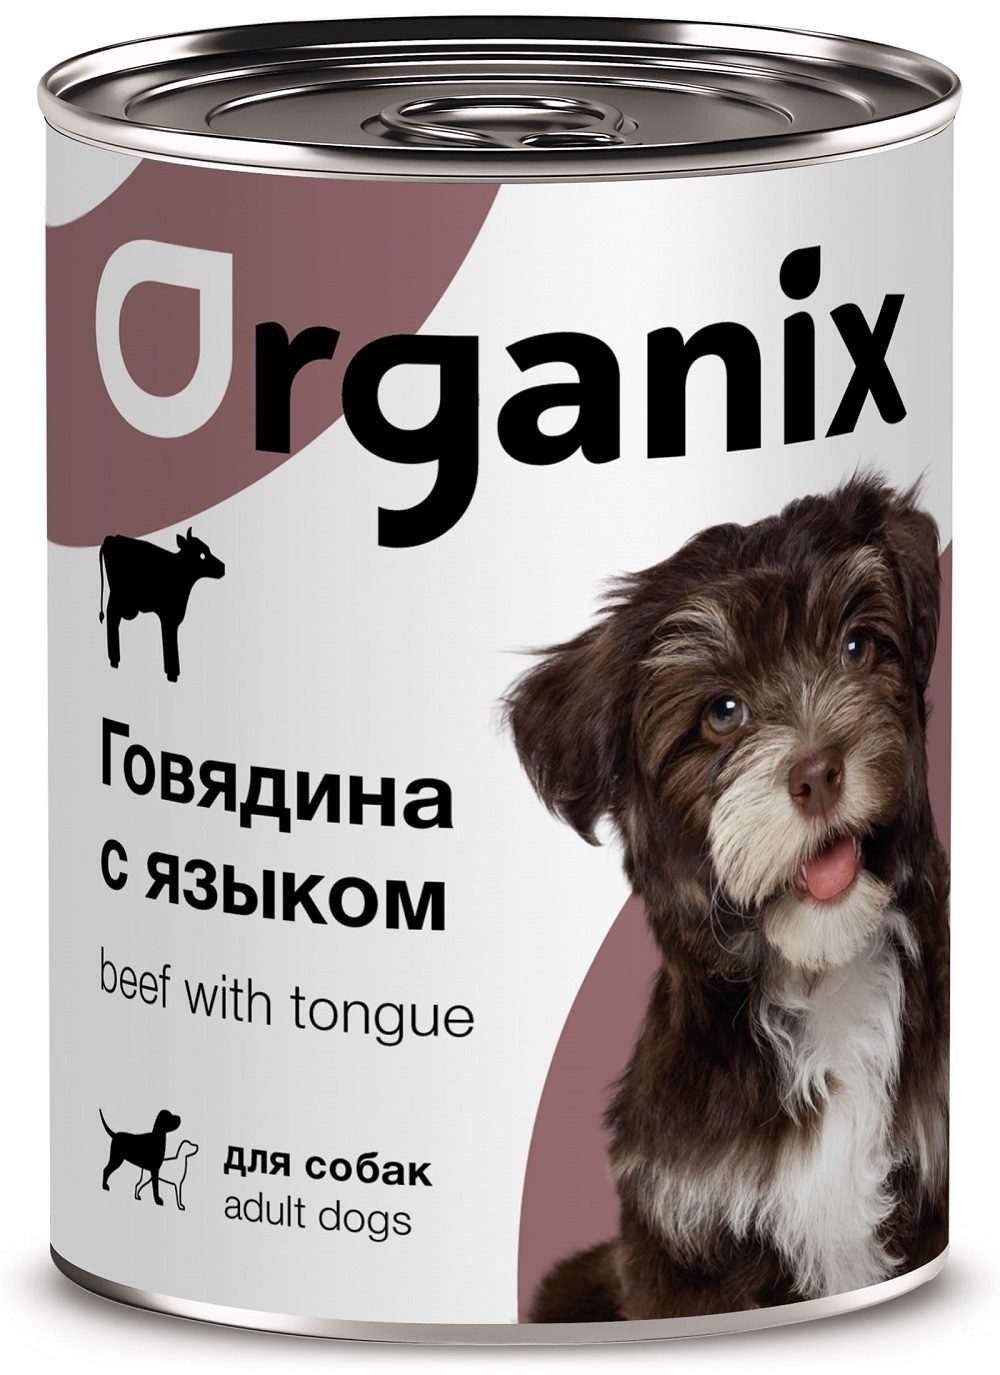 Organix консервы Organix консервы для собак, с говядиной и языком (850 г) organix консервы консервы для собак рагу из гуся с языком и цуккини 22ел16 0 4 кг